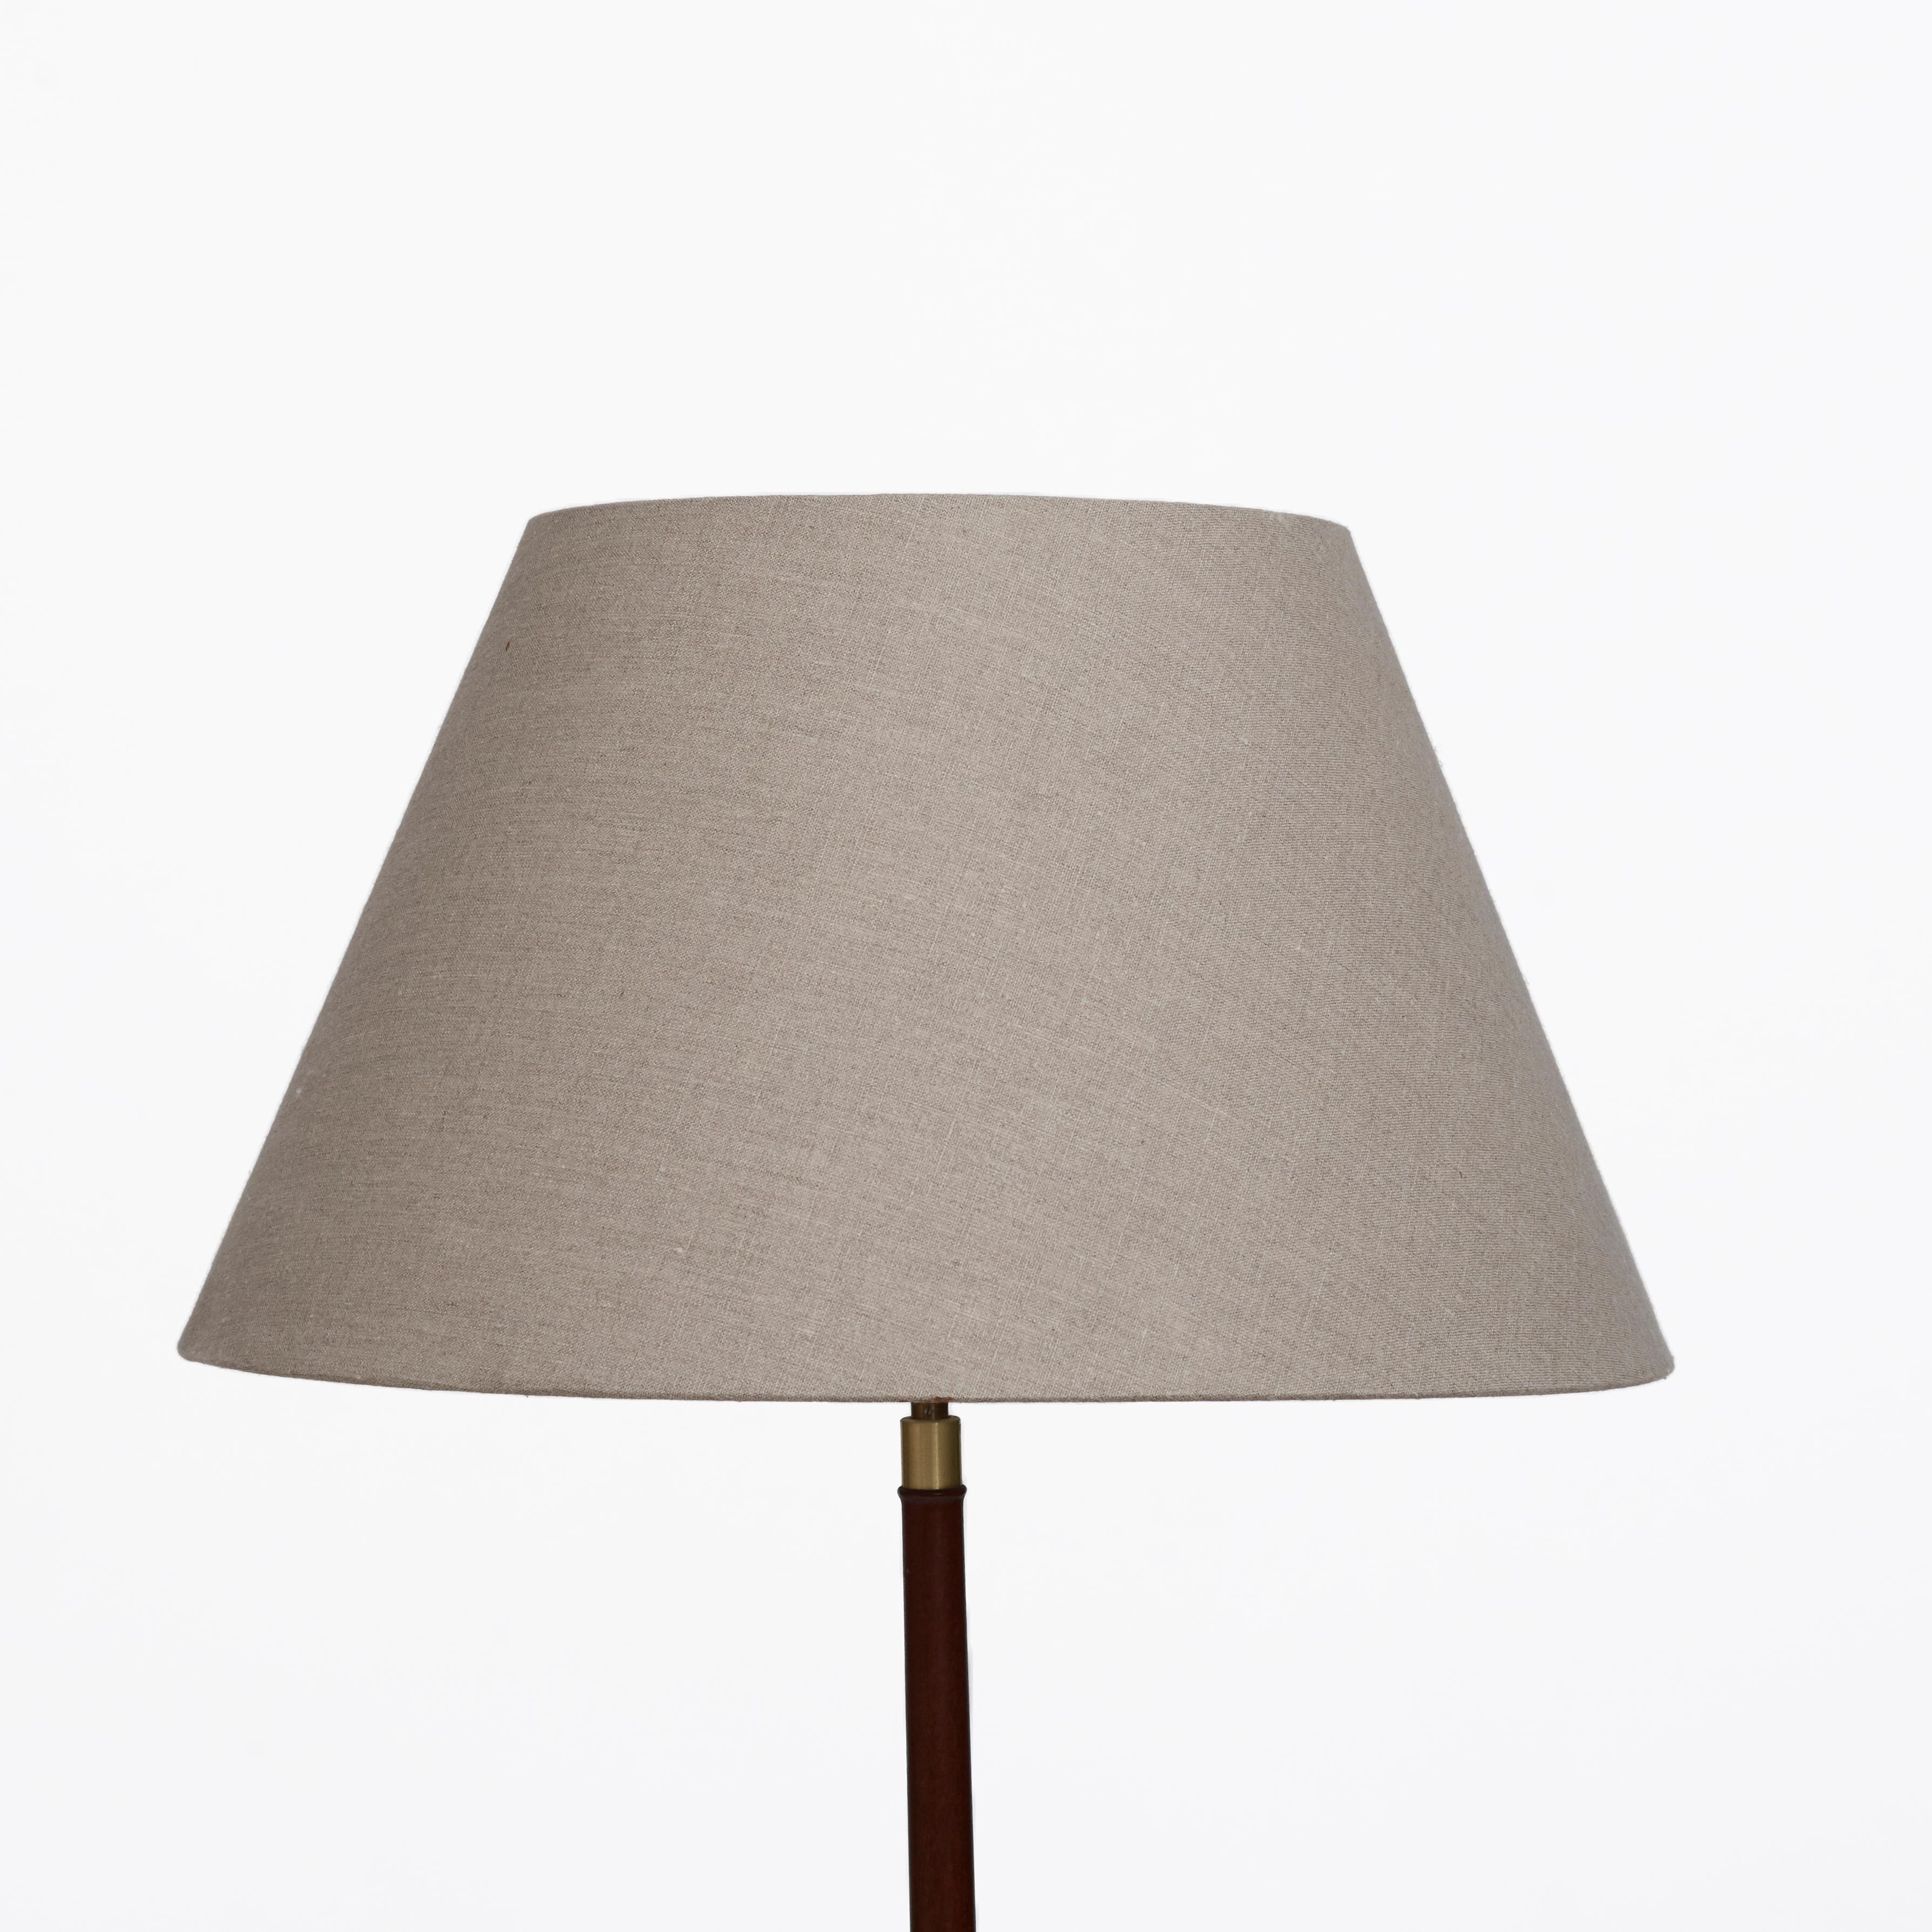 Danish Kaare Klint Floor Lamp